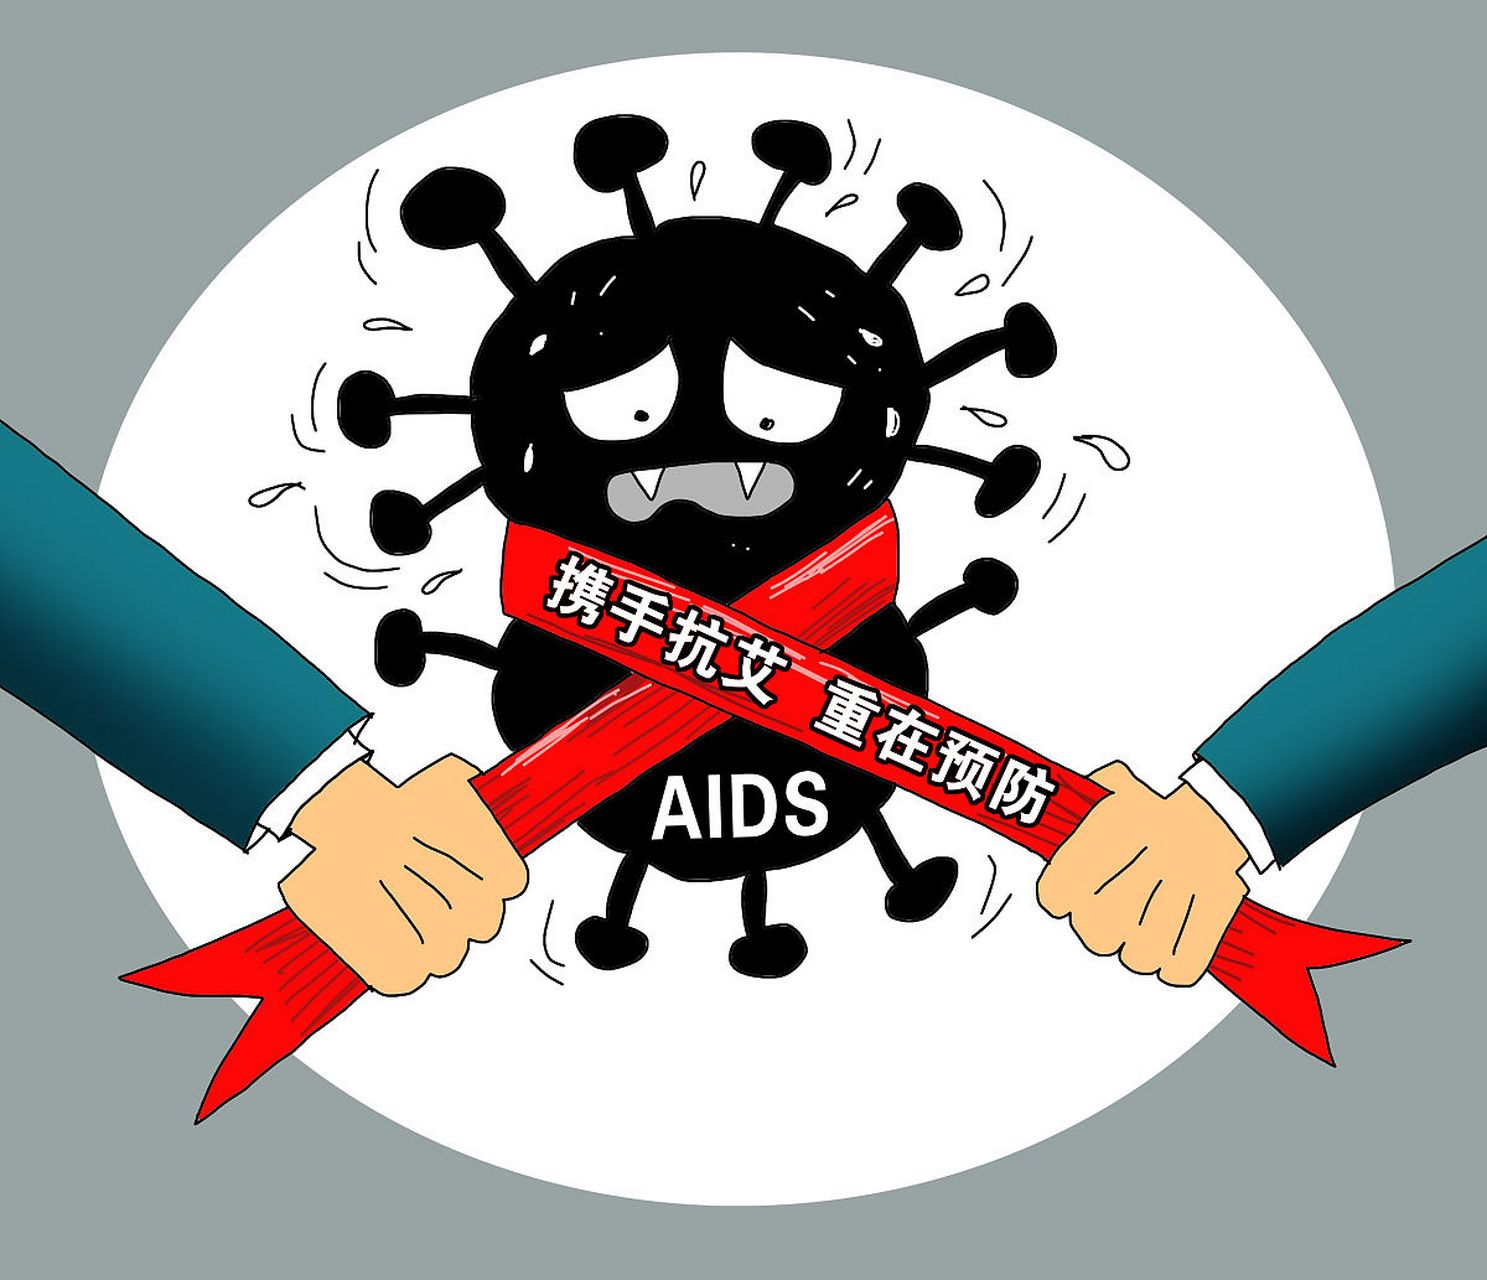 艾滋病,一个让人闻之色变的疾病,它是由人类免疫缺陷病毒(hiv)引起